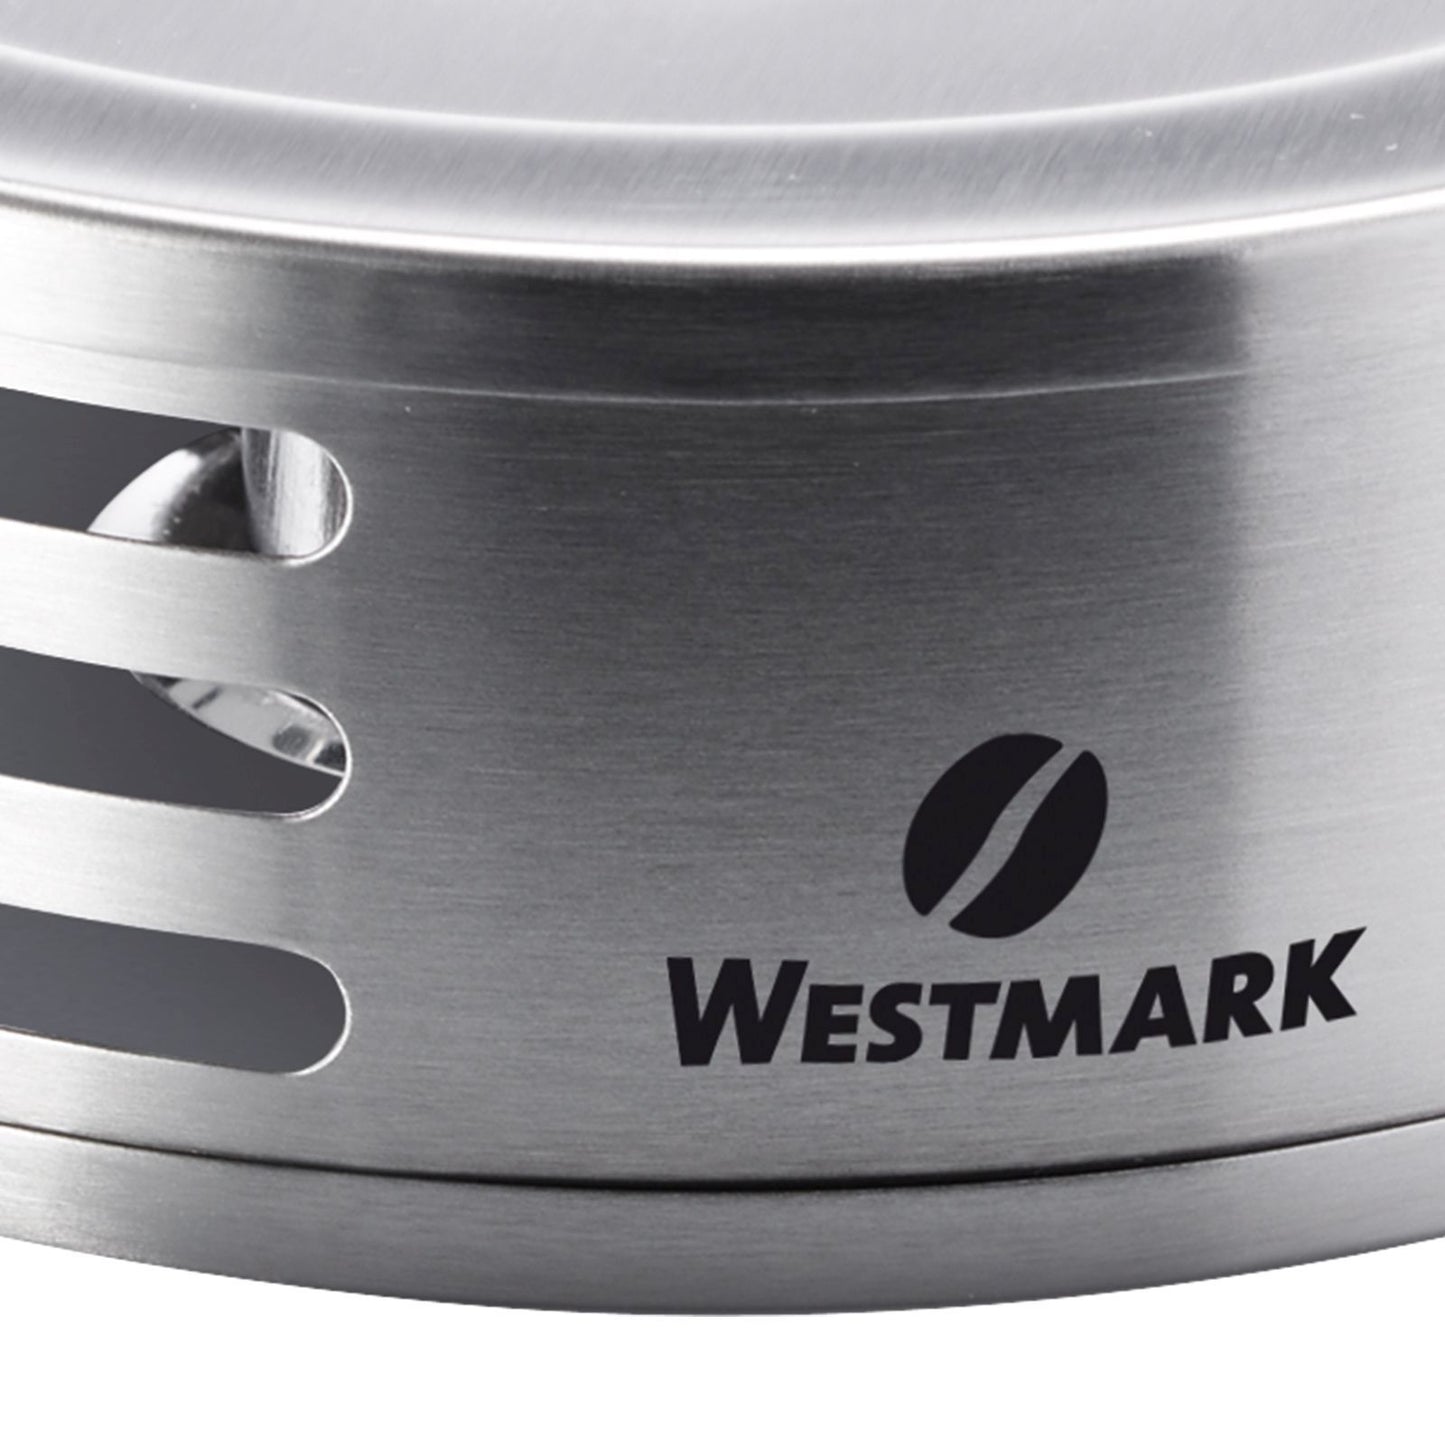 Westmark tea warmer